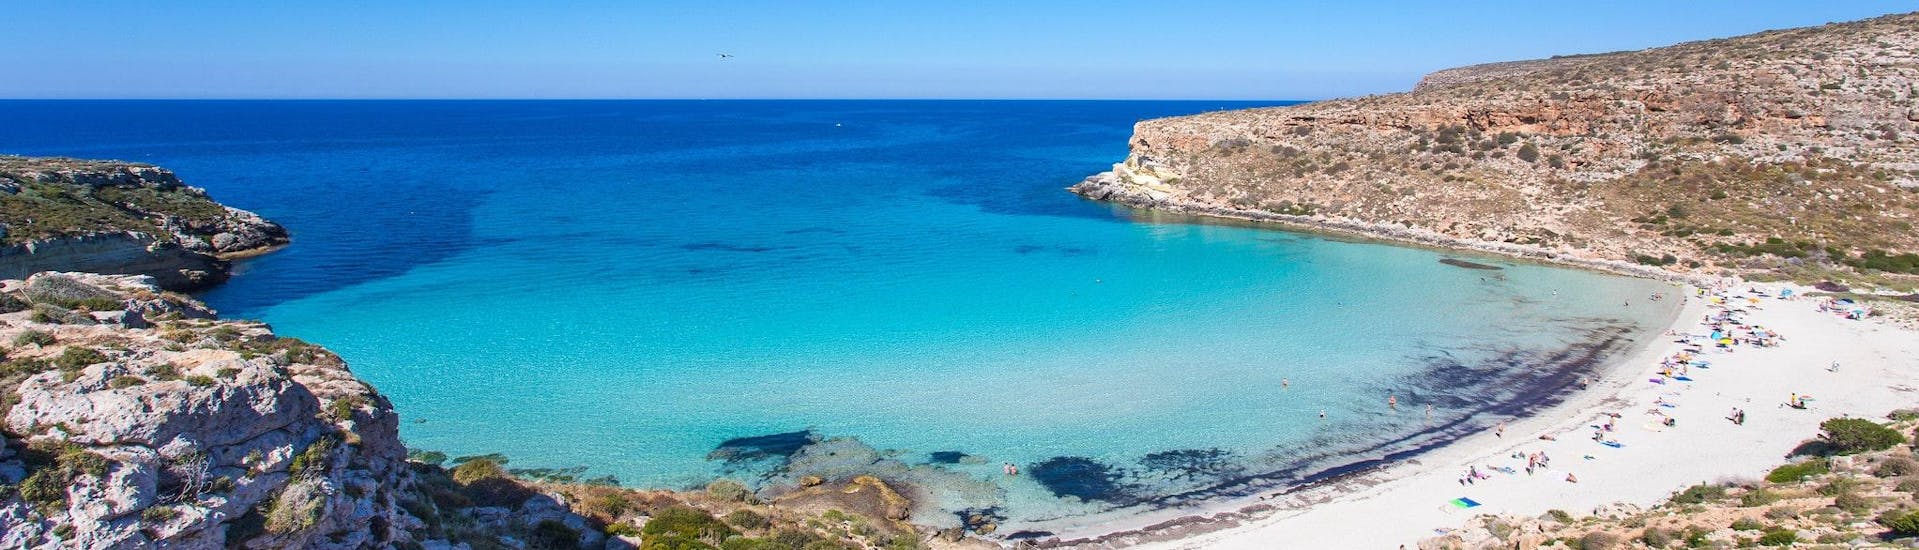 Vista della paradisiaca Spiaggia dei Conigli, che può essere visitata durante molte gite in barca a Lampedusa.